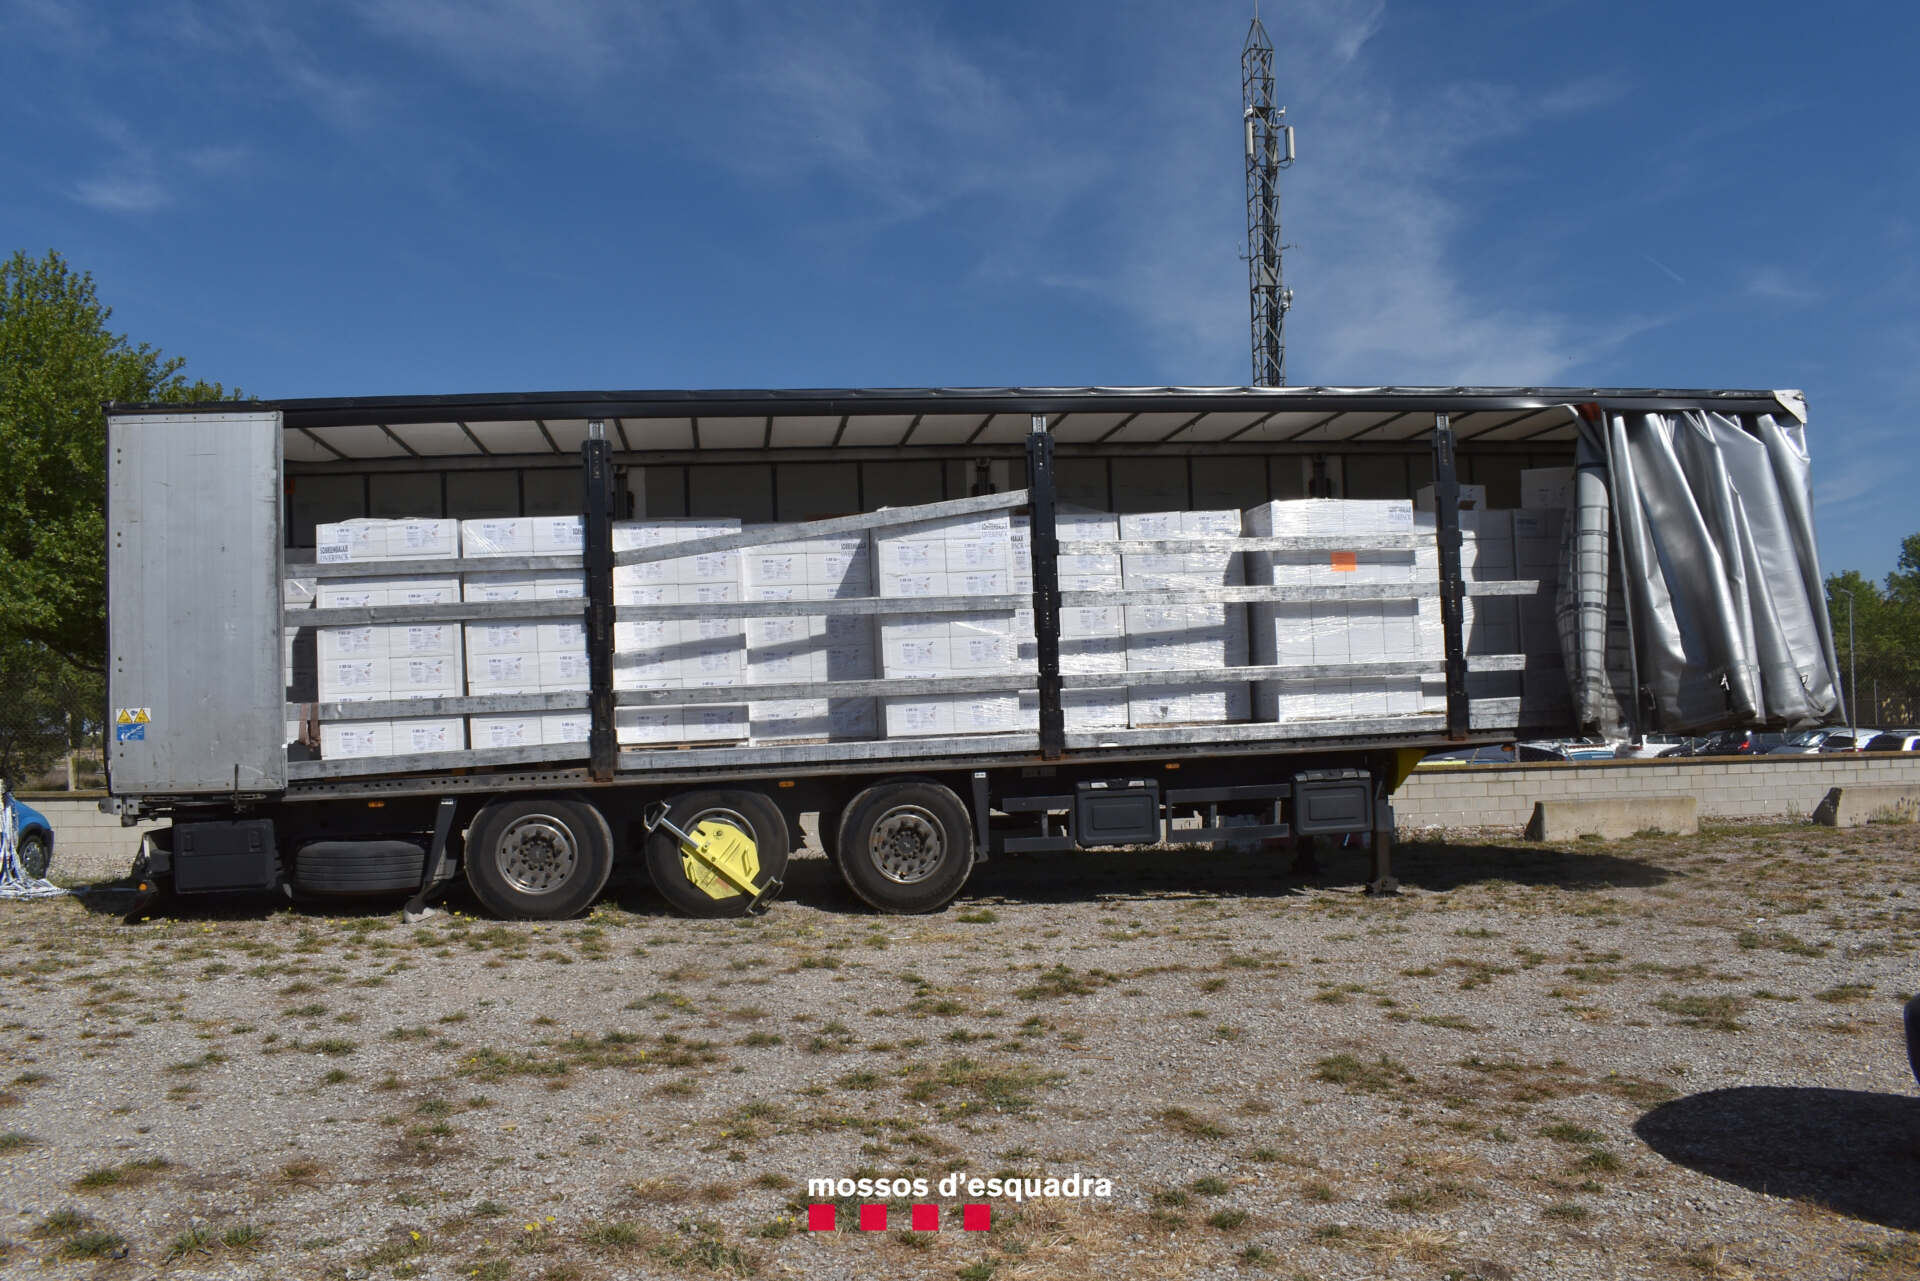 Enxampats cinc homes que van intentar sostreure un carregament de 354 kg d’haixix d’un camió a l’Urgell